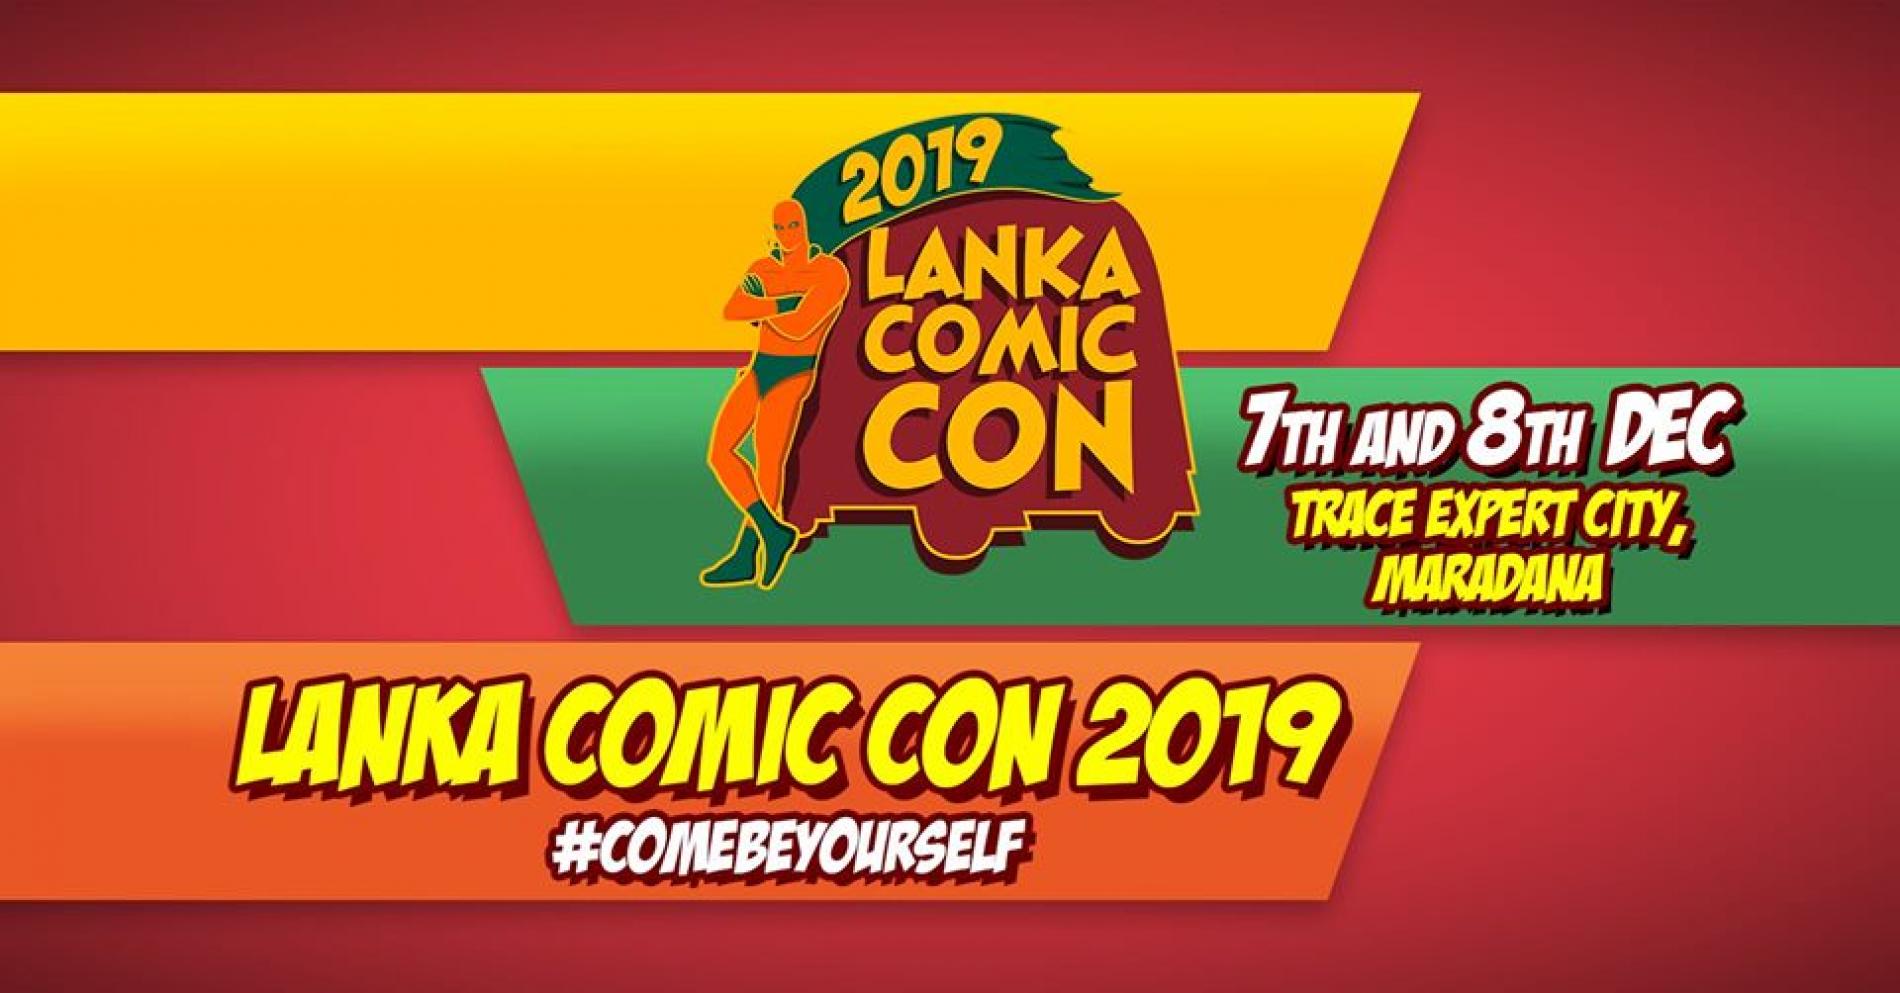 Lanka Comic Con Dates & Venue Have Been Announced!